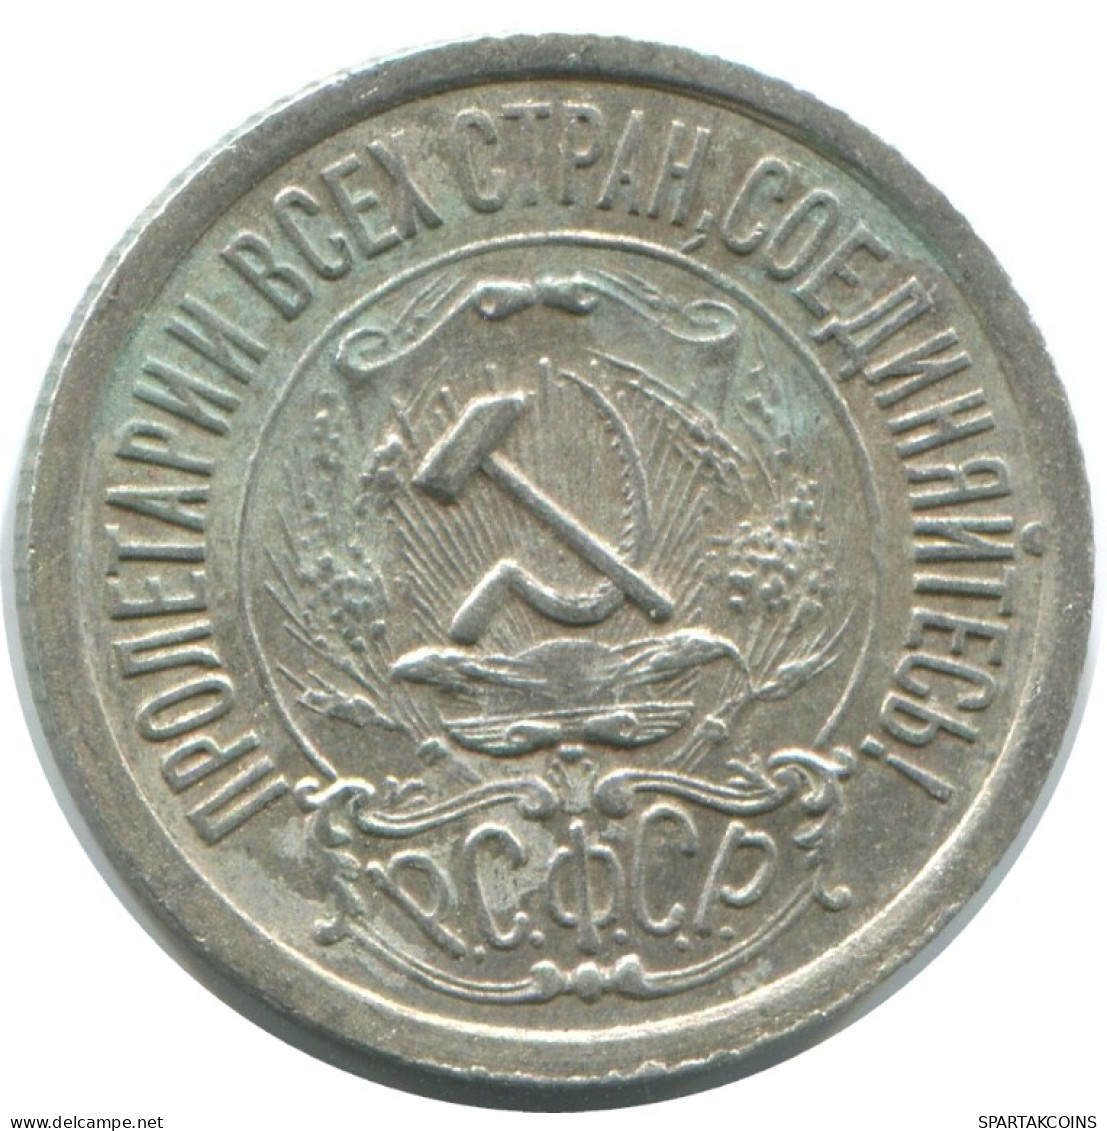 15 KOPEKS 1923 RUSIA RUSSIA RSFSR PLATA Moneda HIGH GRADE #AF075.4.E.A - Russland